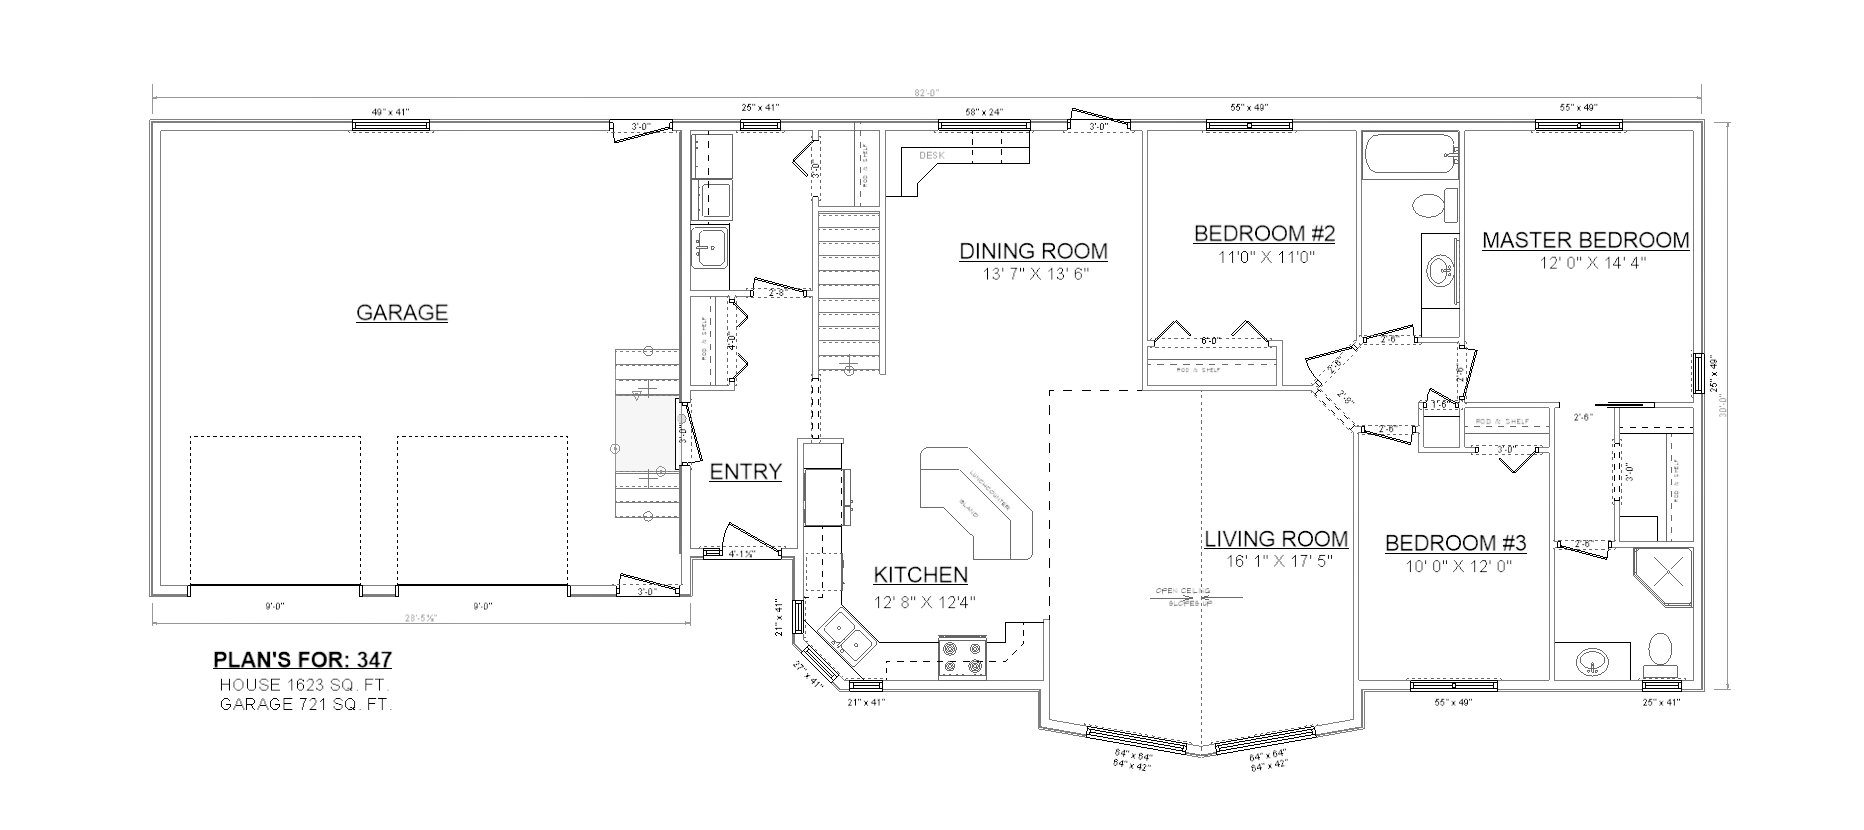 Penner Homes Floor Plan Id: 347